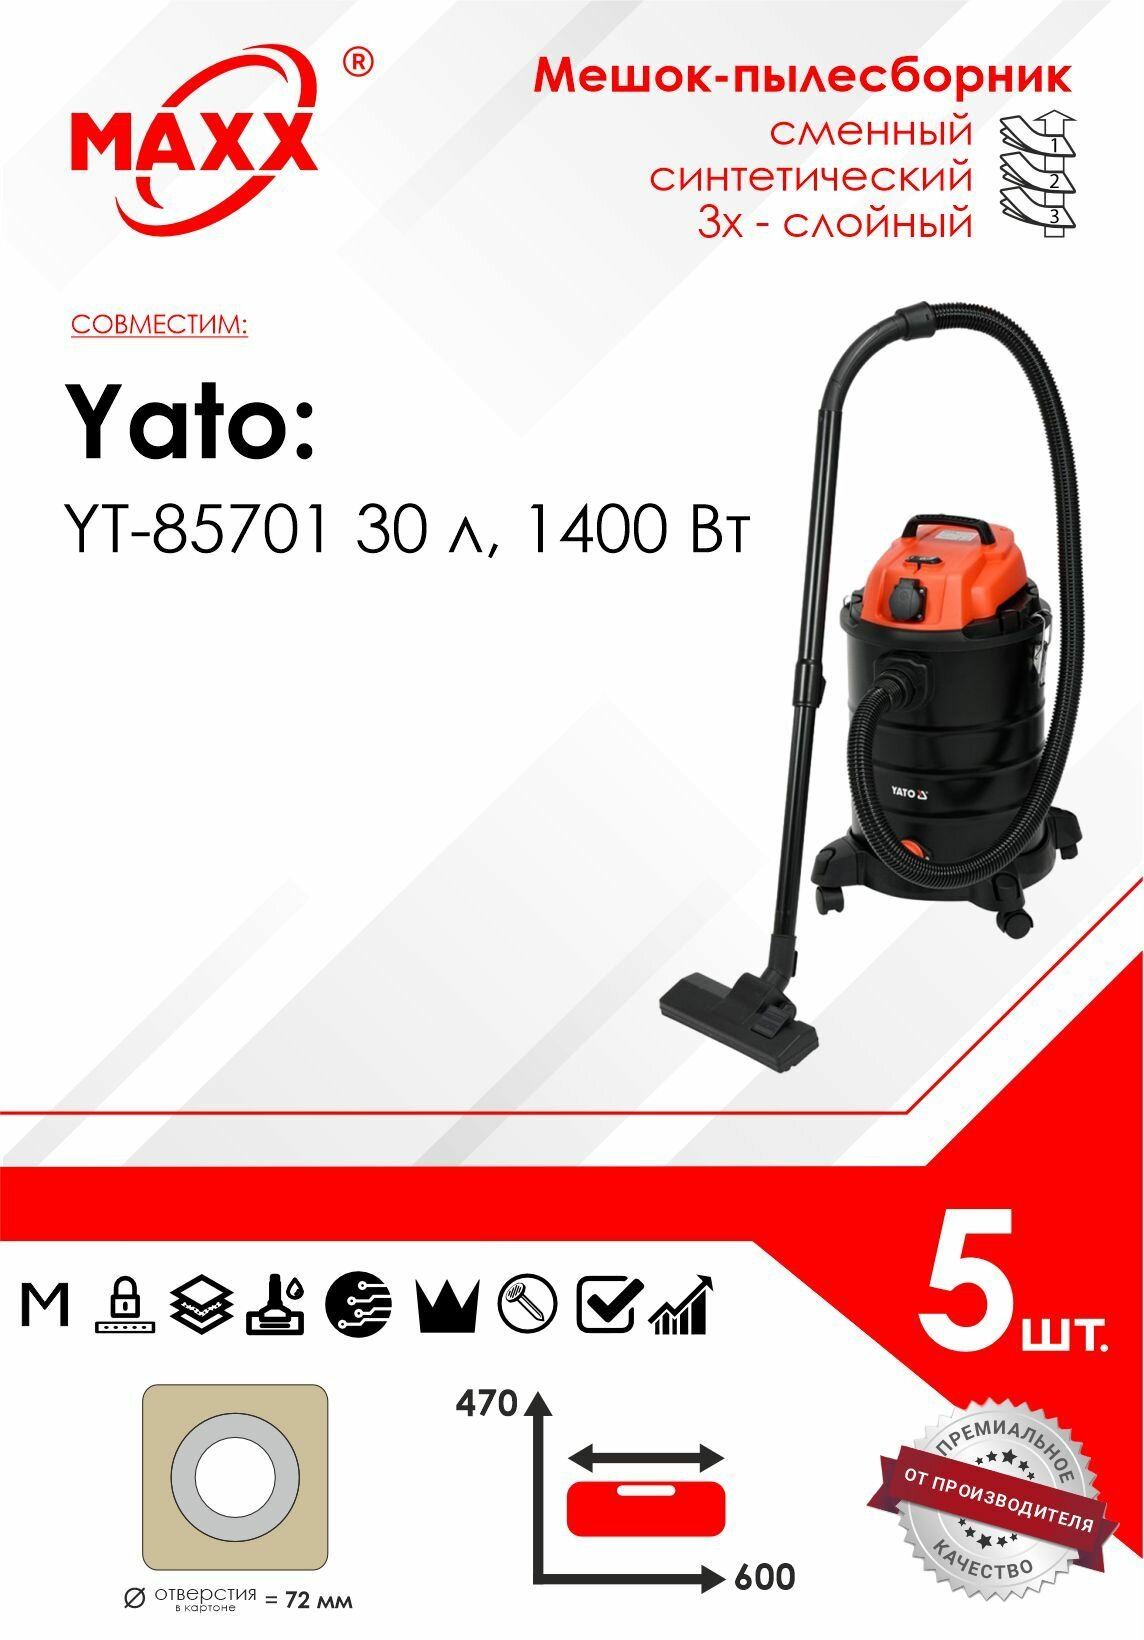 Мешок - пылесборник 5 шт. для пылесоса Yato YT-85701 30 л, 1400 Вт